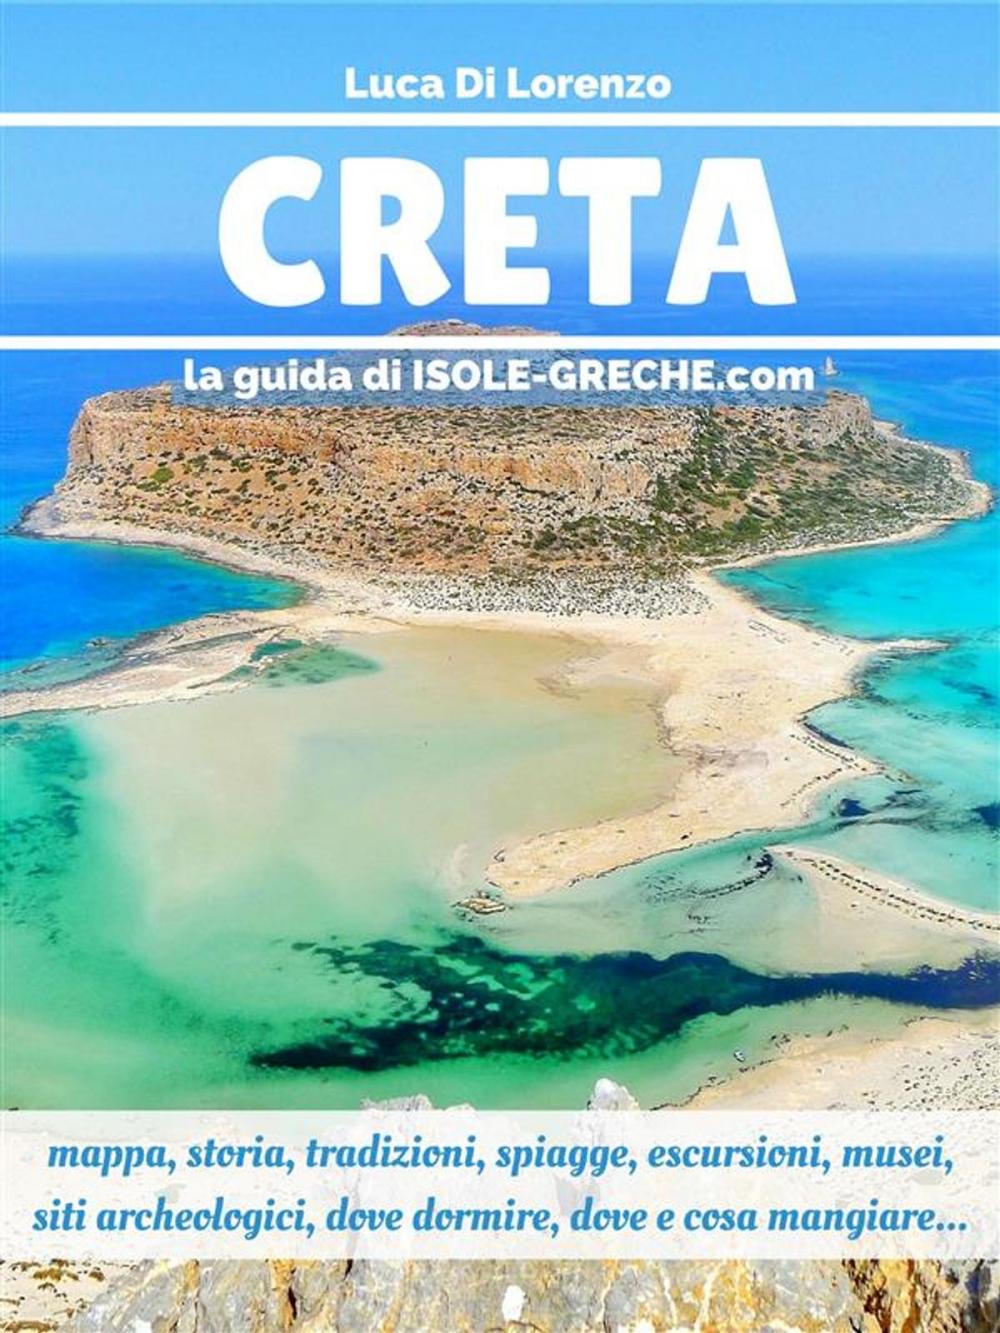 Big bigCover of Creta - La guida di isole-greche.com